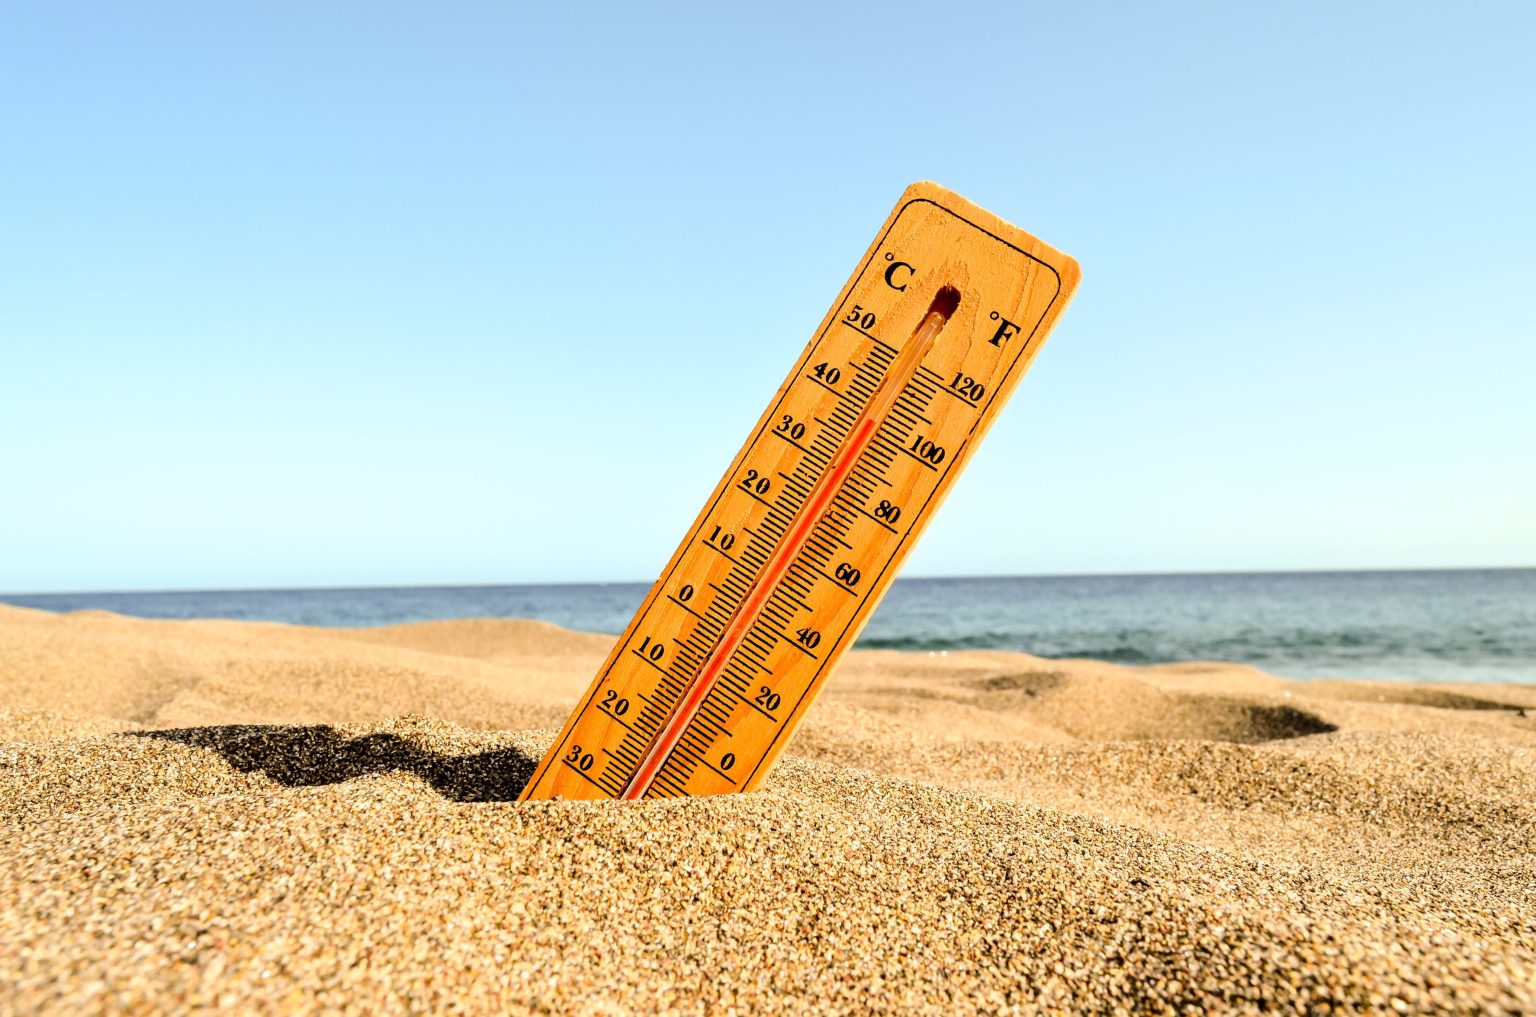 Un termómetro en una playa. Foto de temperatura creado por wirestock - www.freepik.es